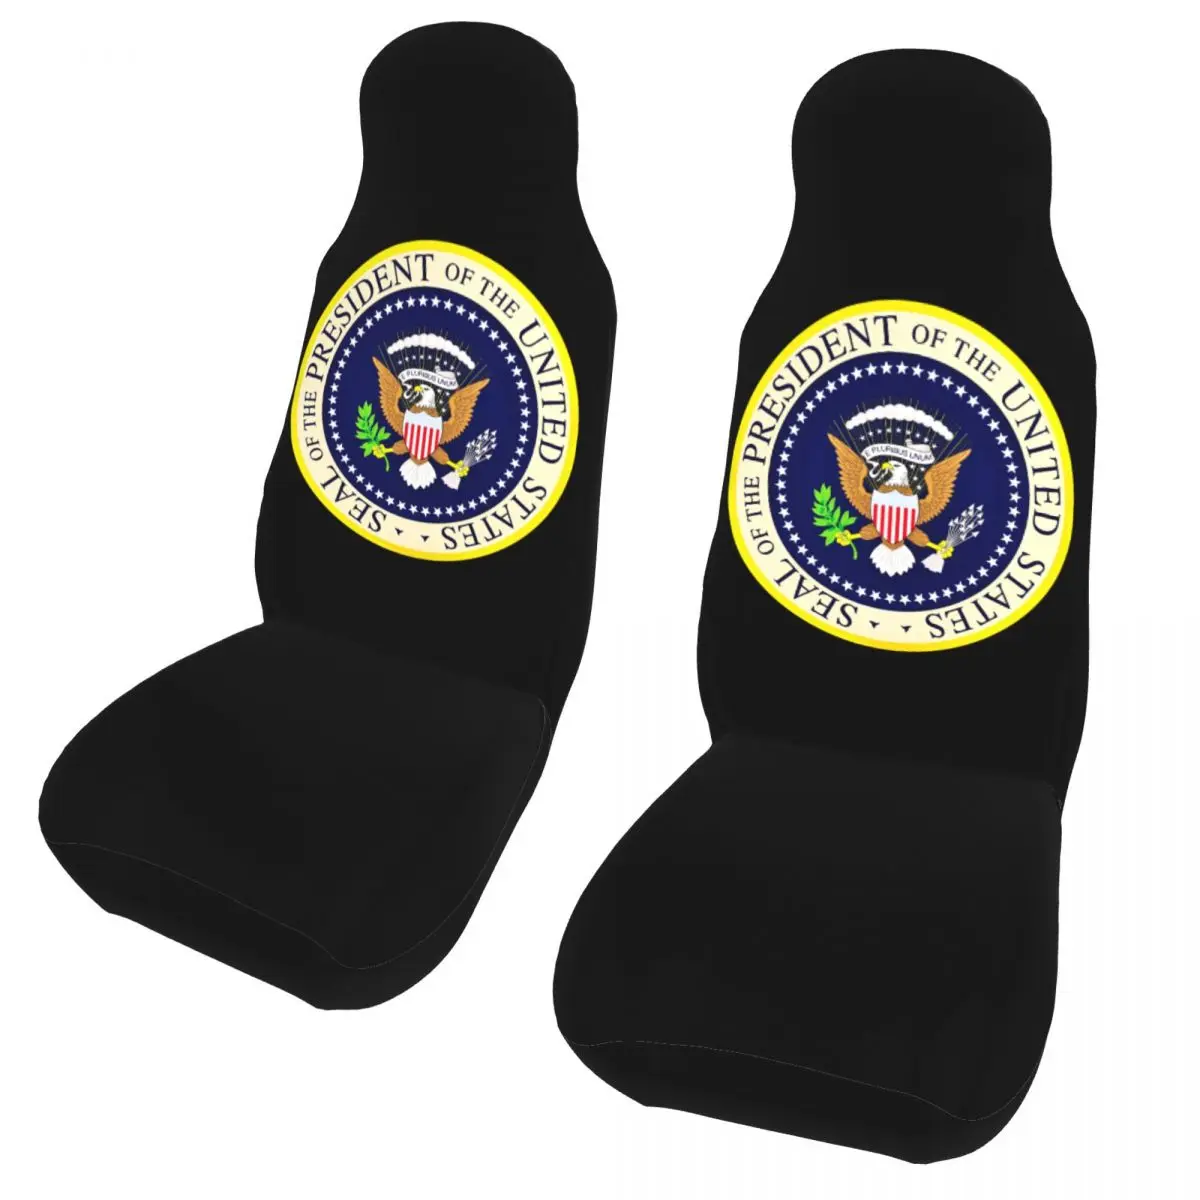 

Печать Председателя флага Соединенных Штатов искусственный интерьер автомобиля для всех видов моделей чехлов для сидений автомобиля ткань